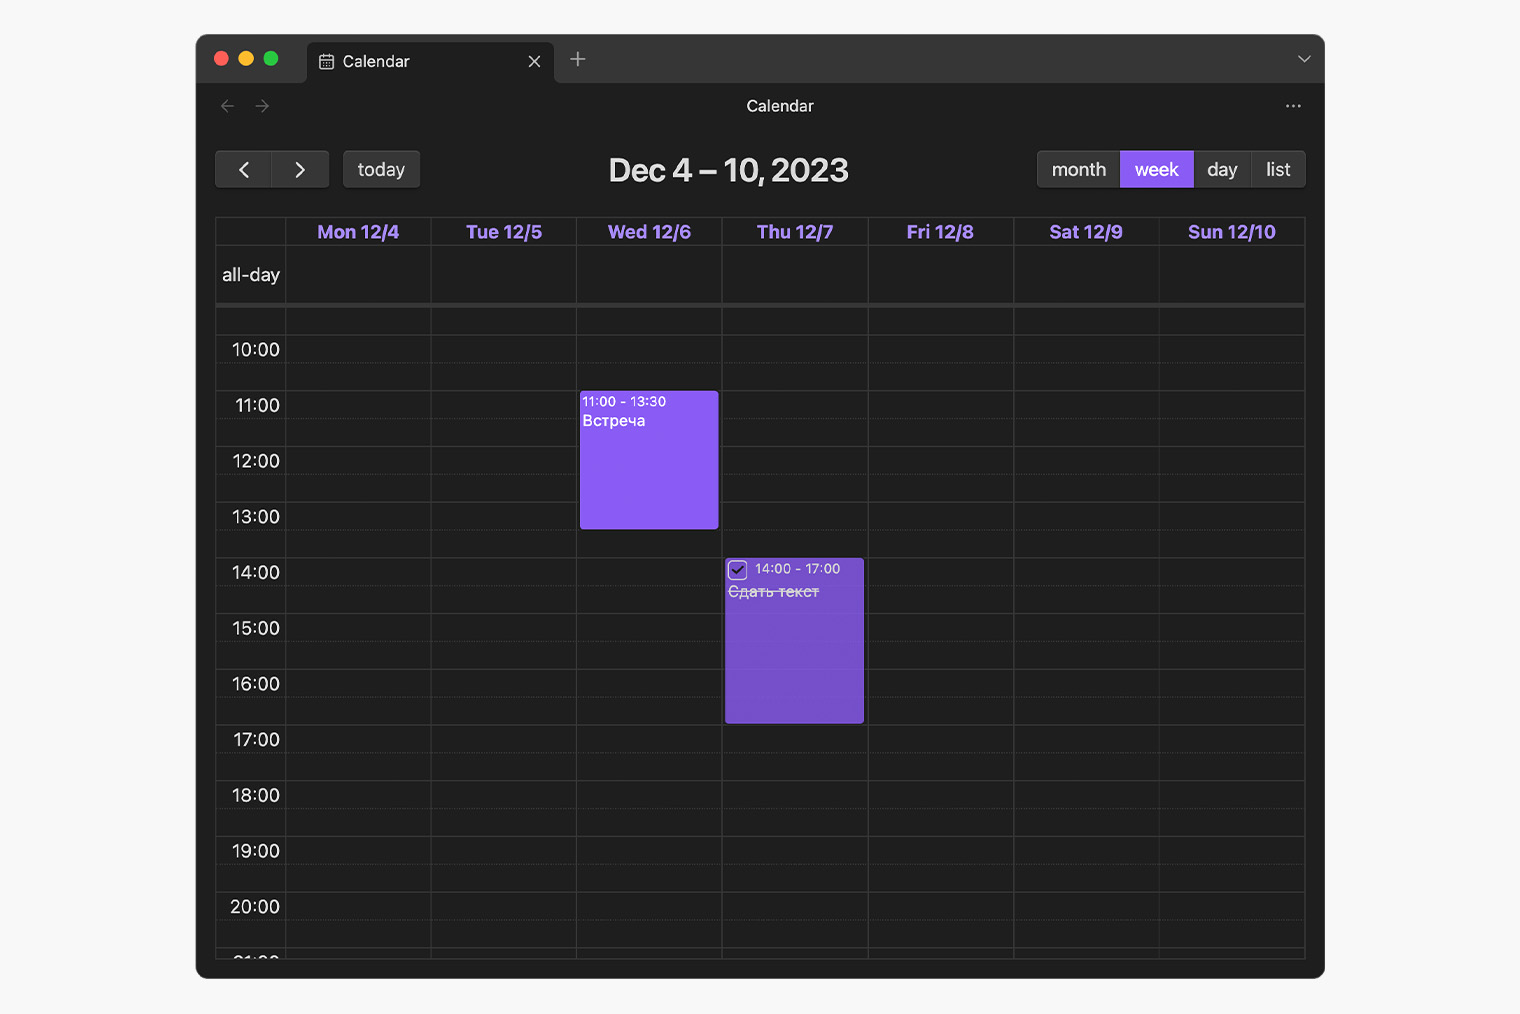 Интерфейс Full Calendar — можно создавать дела и задачи, отмечать выполнение. Маркировка пунктов по цветам тоже есть, включается в настройках